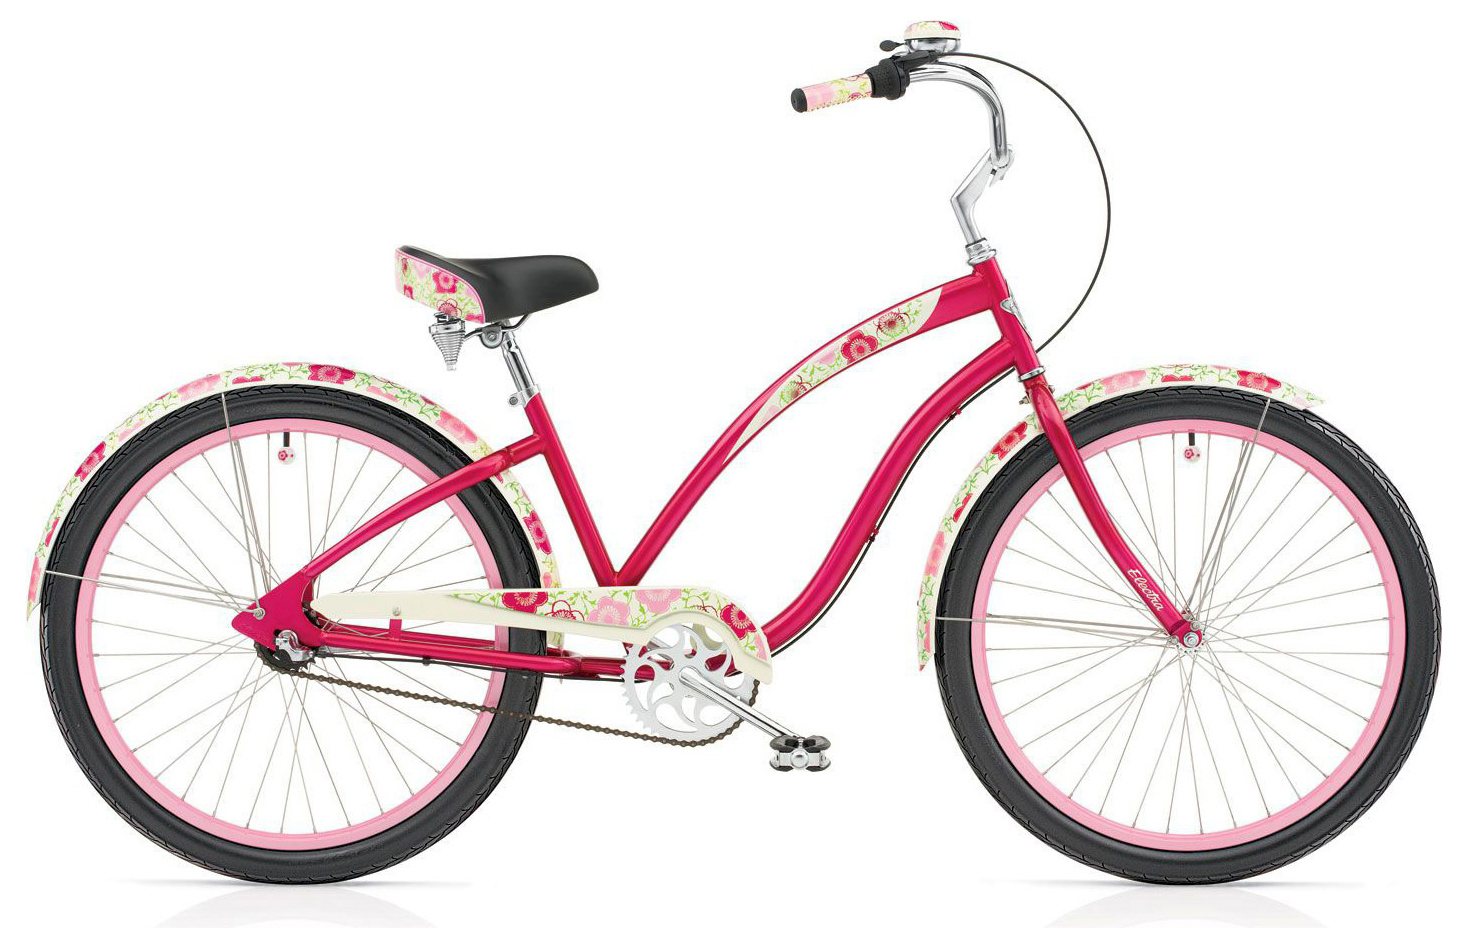  Отзывы о Женском велосипеде Electra Flowers 3i 2019